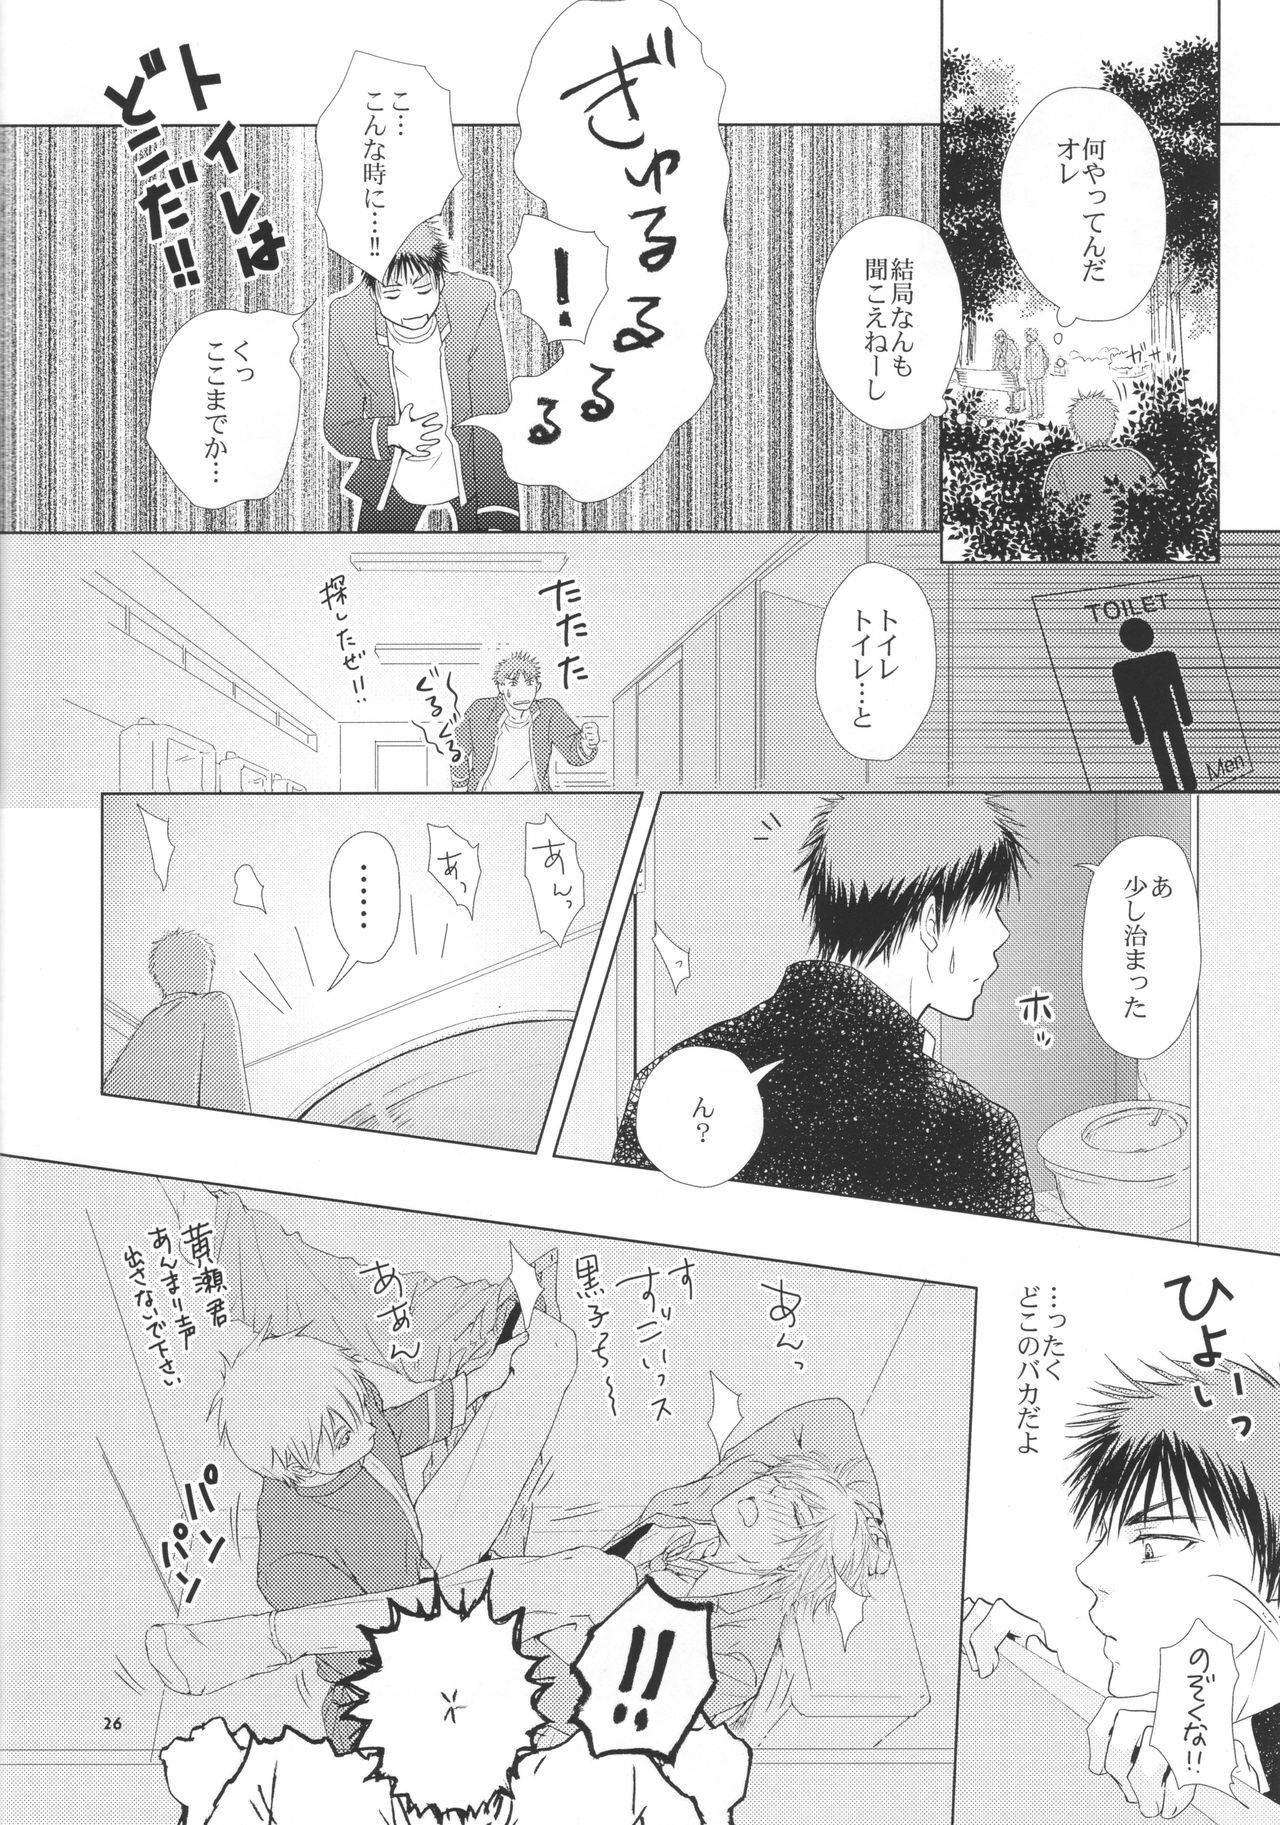 (Shadow Trickster 2) [ViViaN (JiN)] VIOLATION→FOULS (Kuroko no Basuke) page 26 full